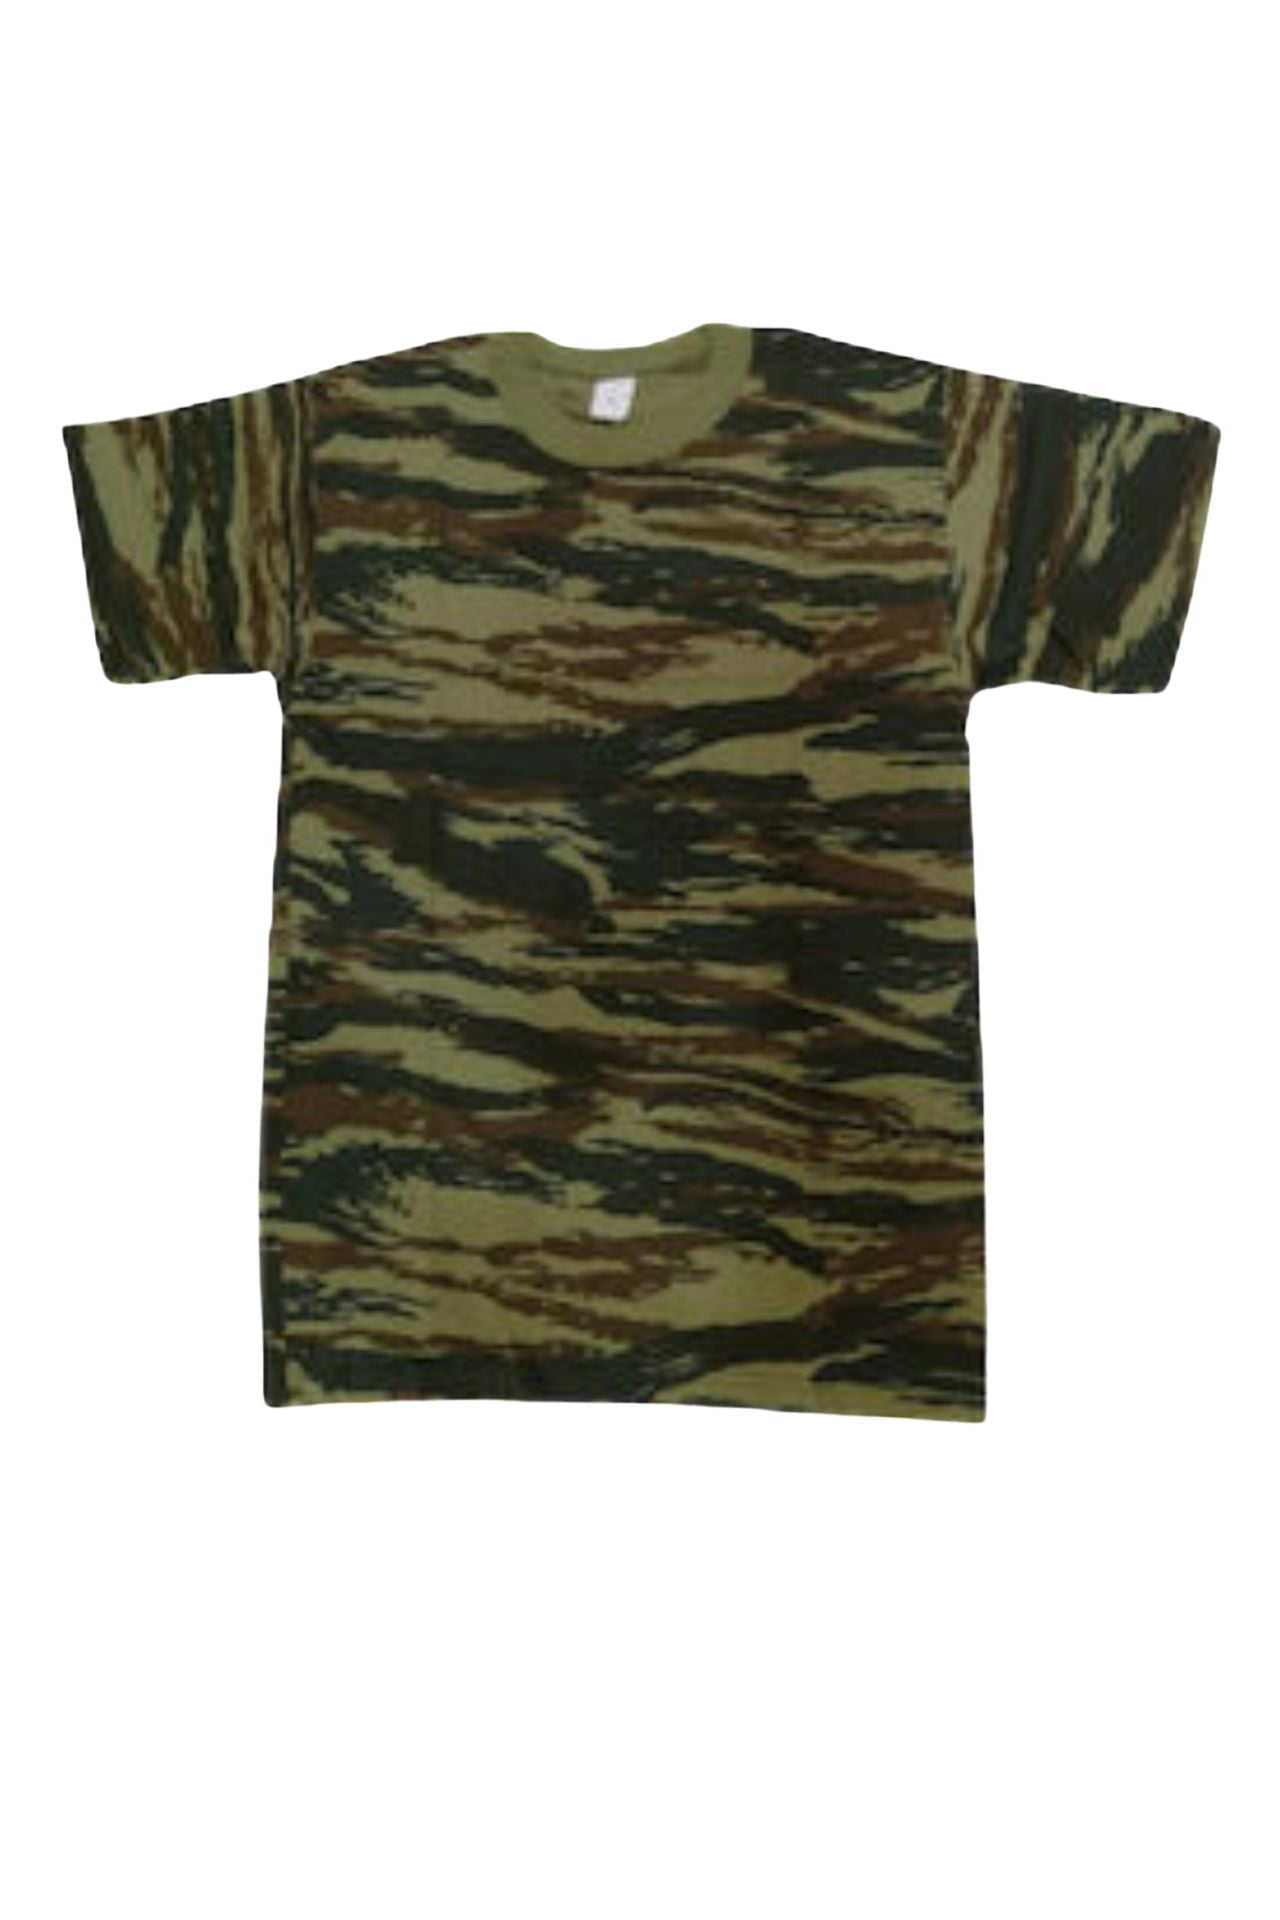 kontomaniko-t-shirt-parallagis-0304 (4)